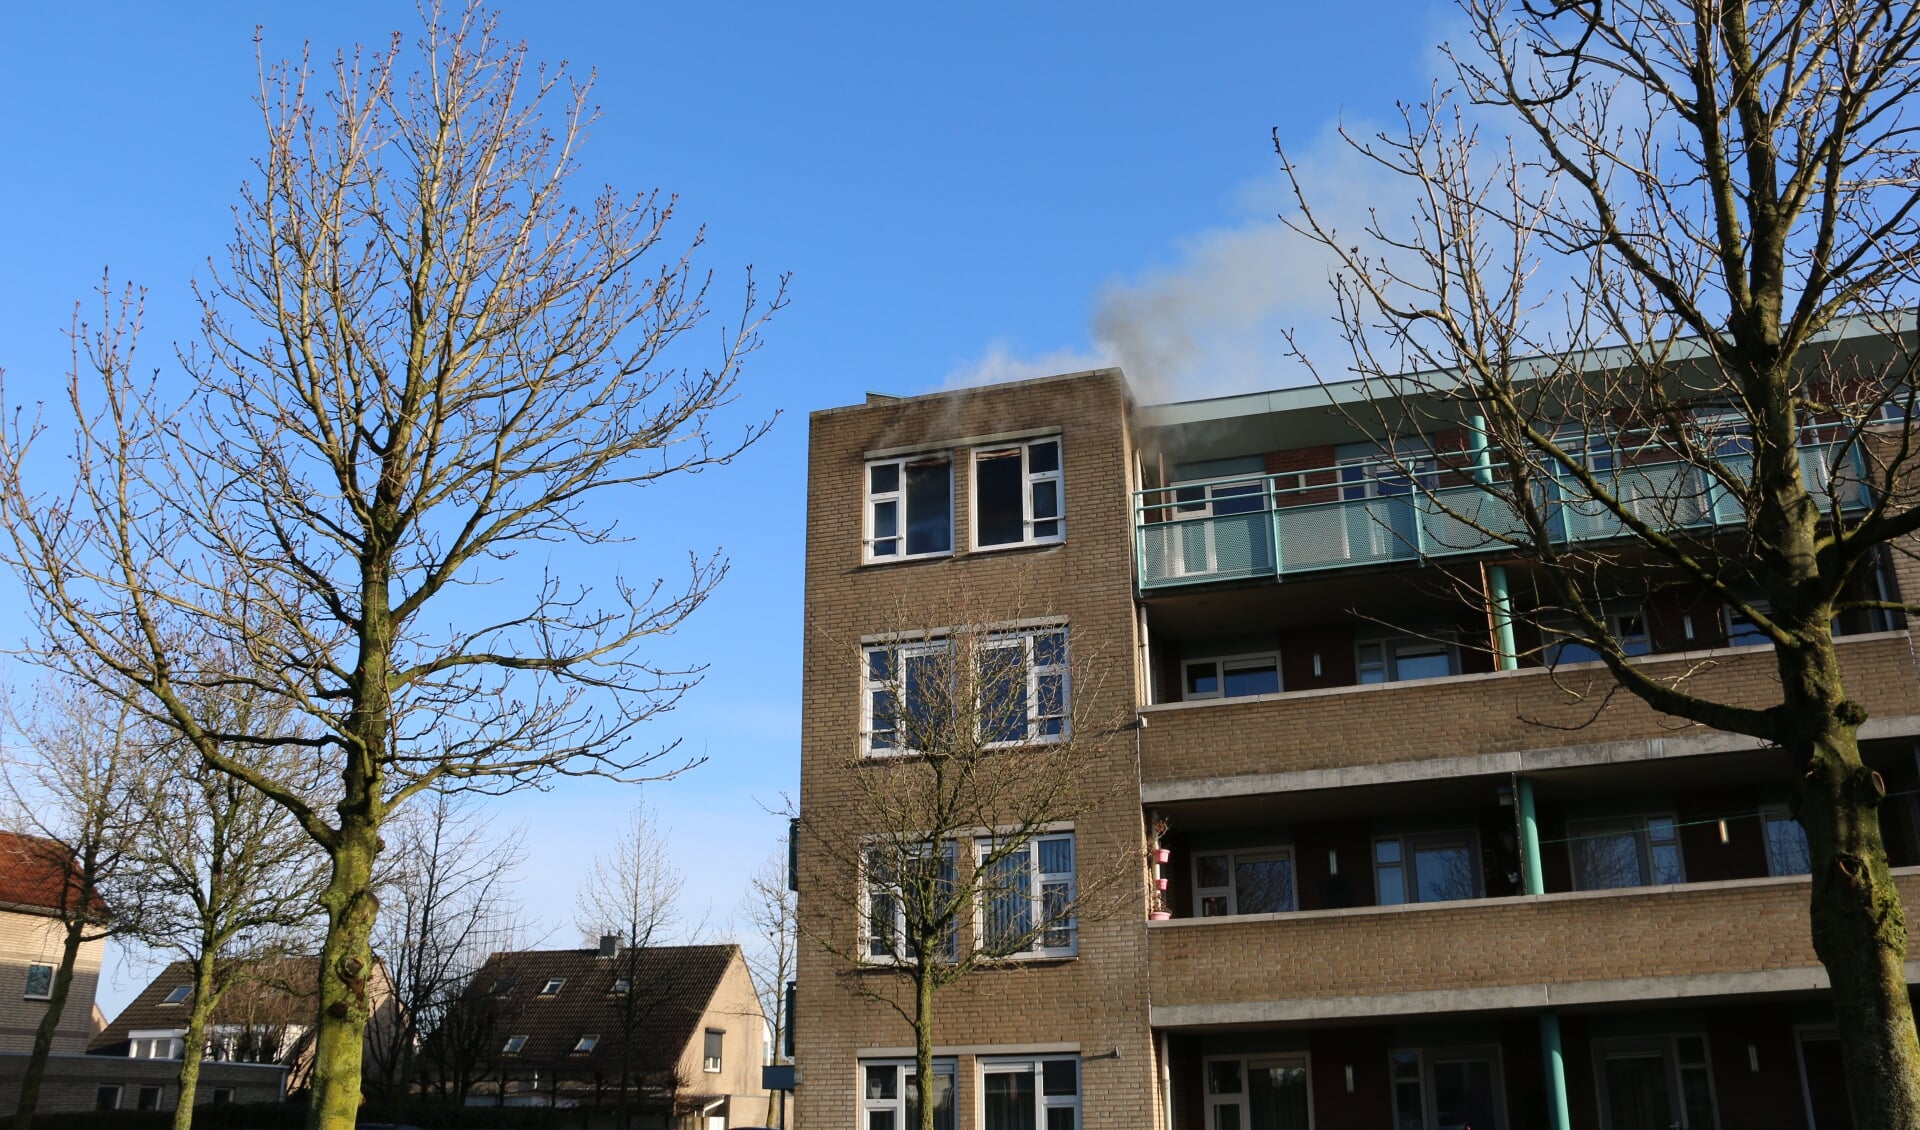 Woningbrand aan de Zuring in Cuijk. (foto: SK-Media)